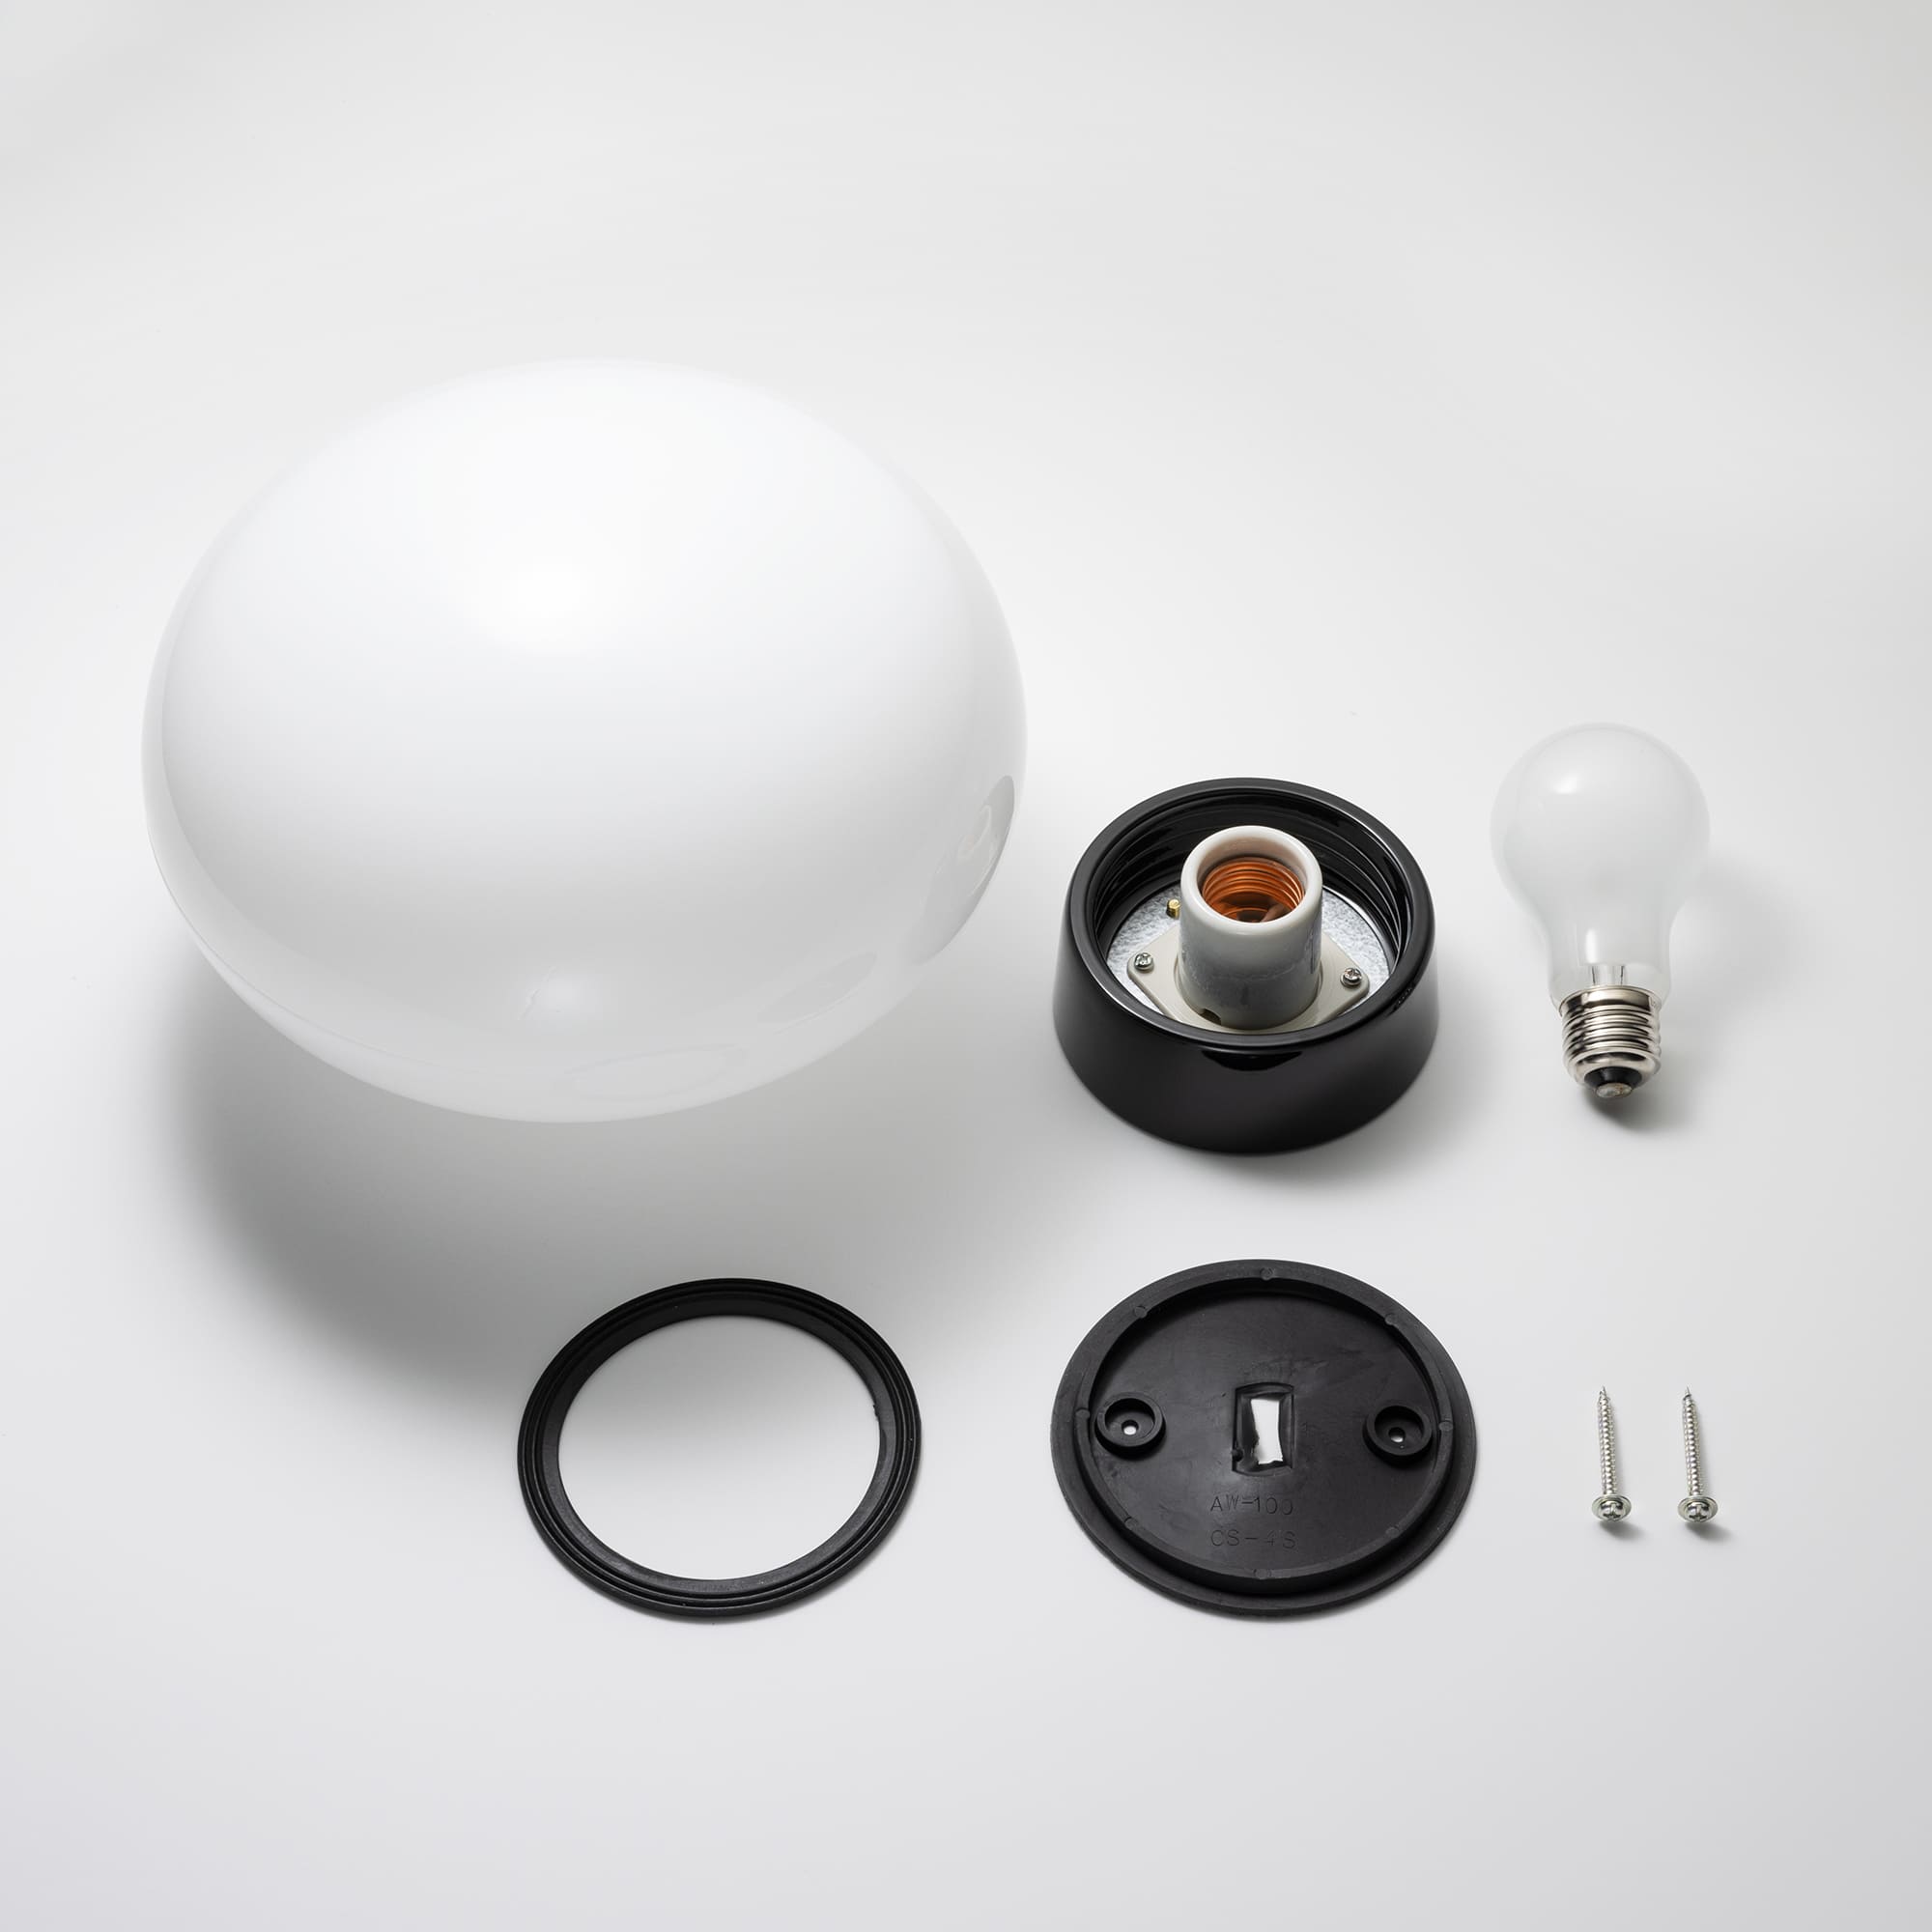 ミルクガラス照明 ブラック 楕円 LT-BR005-12-G141 電球、ゴムパッキン、取付ネジが付属します